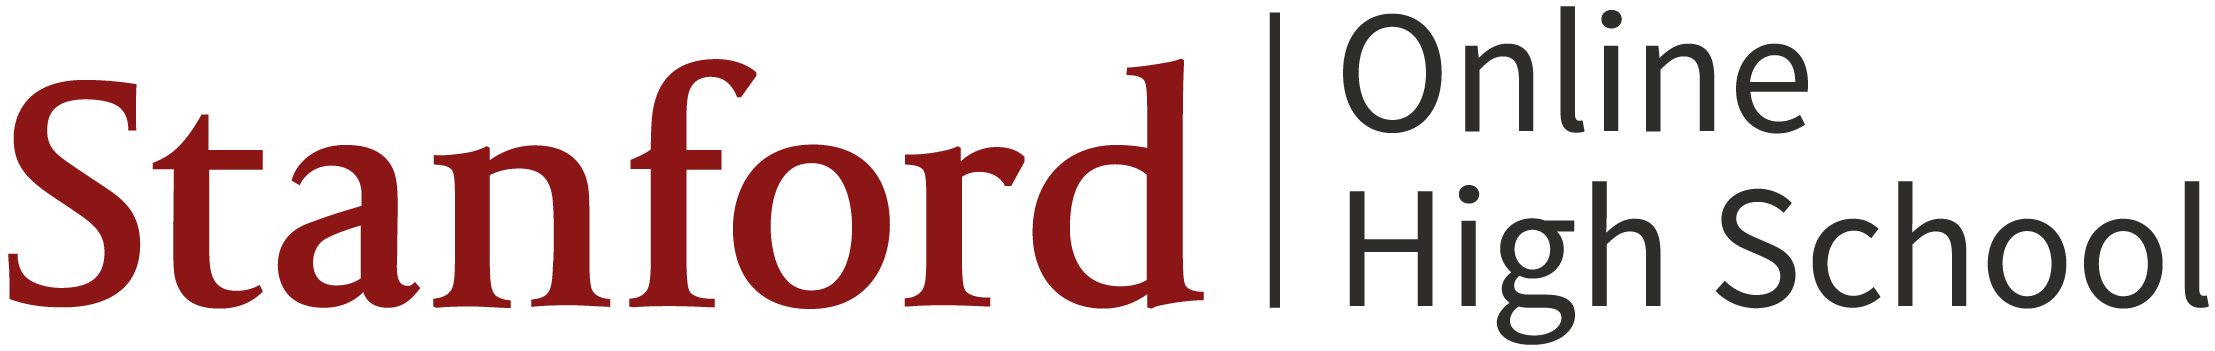 Stanford Online High School logo